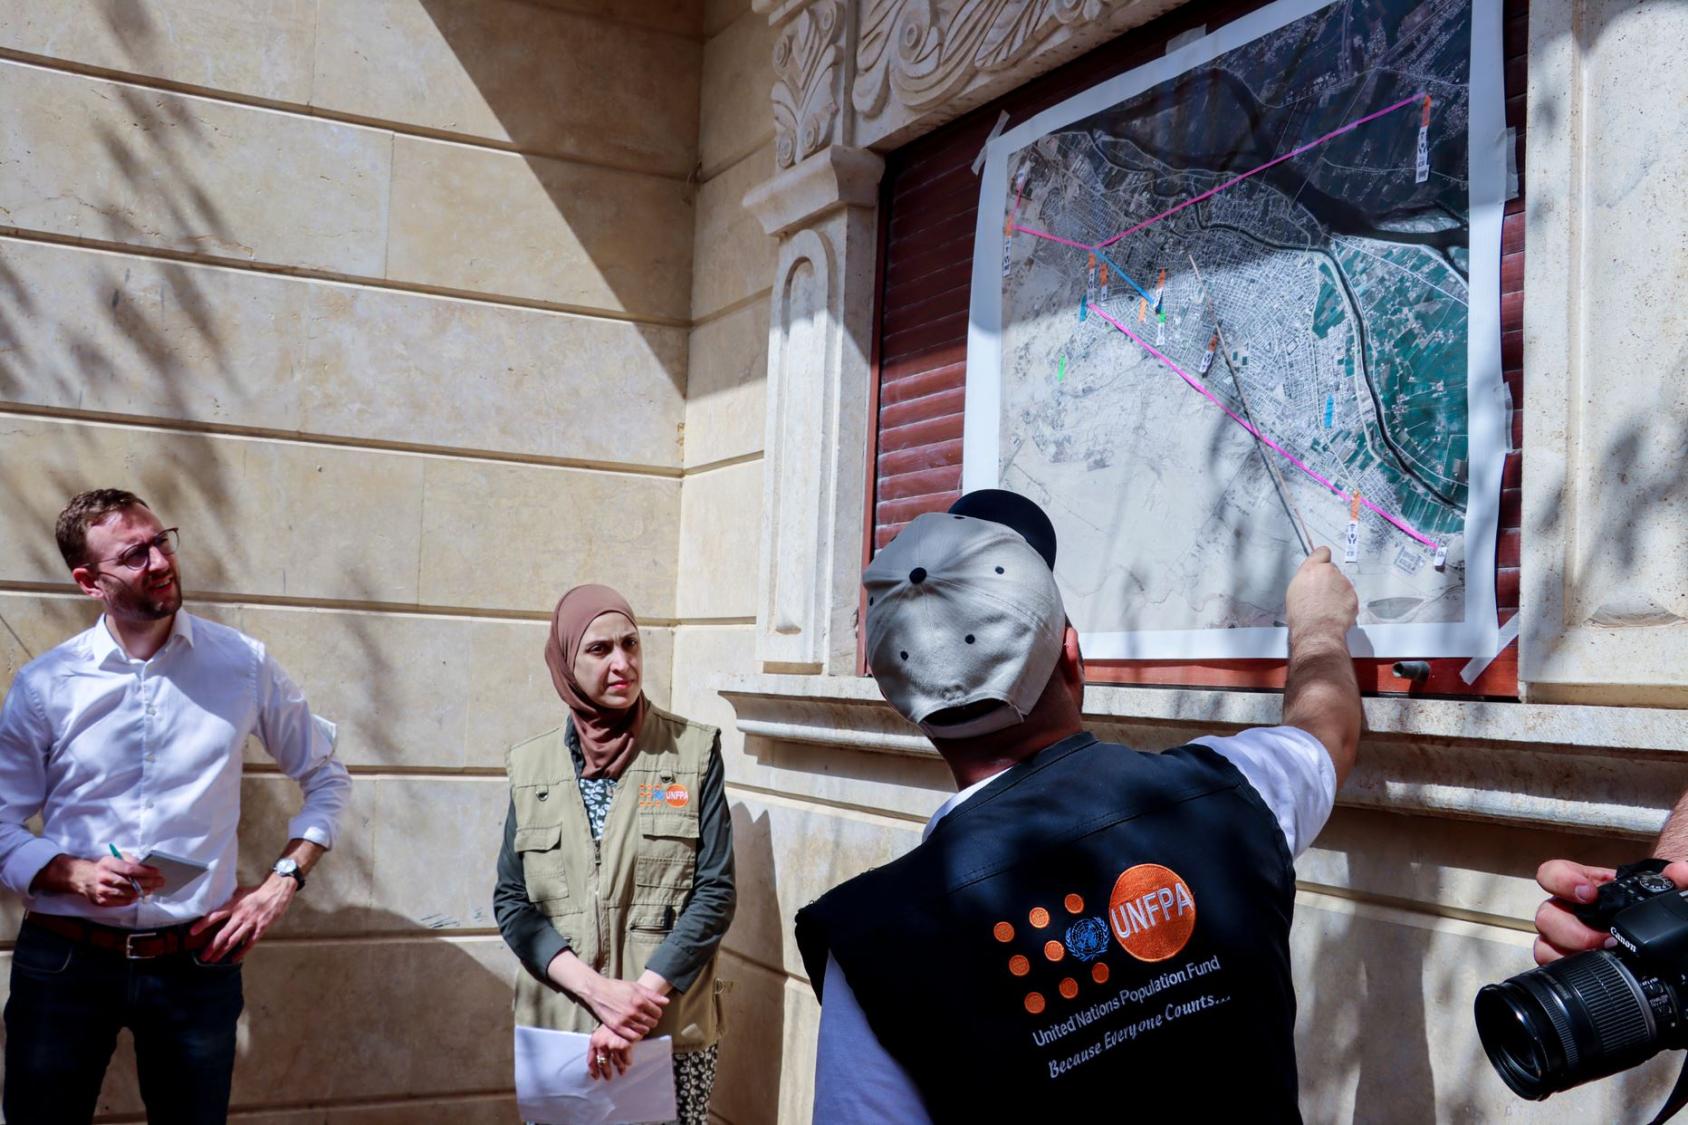 يقدم موظفون من صندوق الأمم المتحدة للسكان إحاطة لمجموعة من المانحين خلال زيارة لمدينة دير الزور.